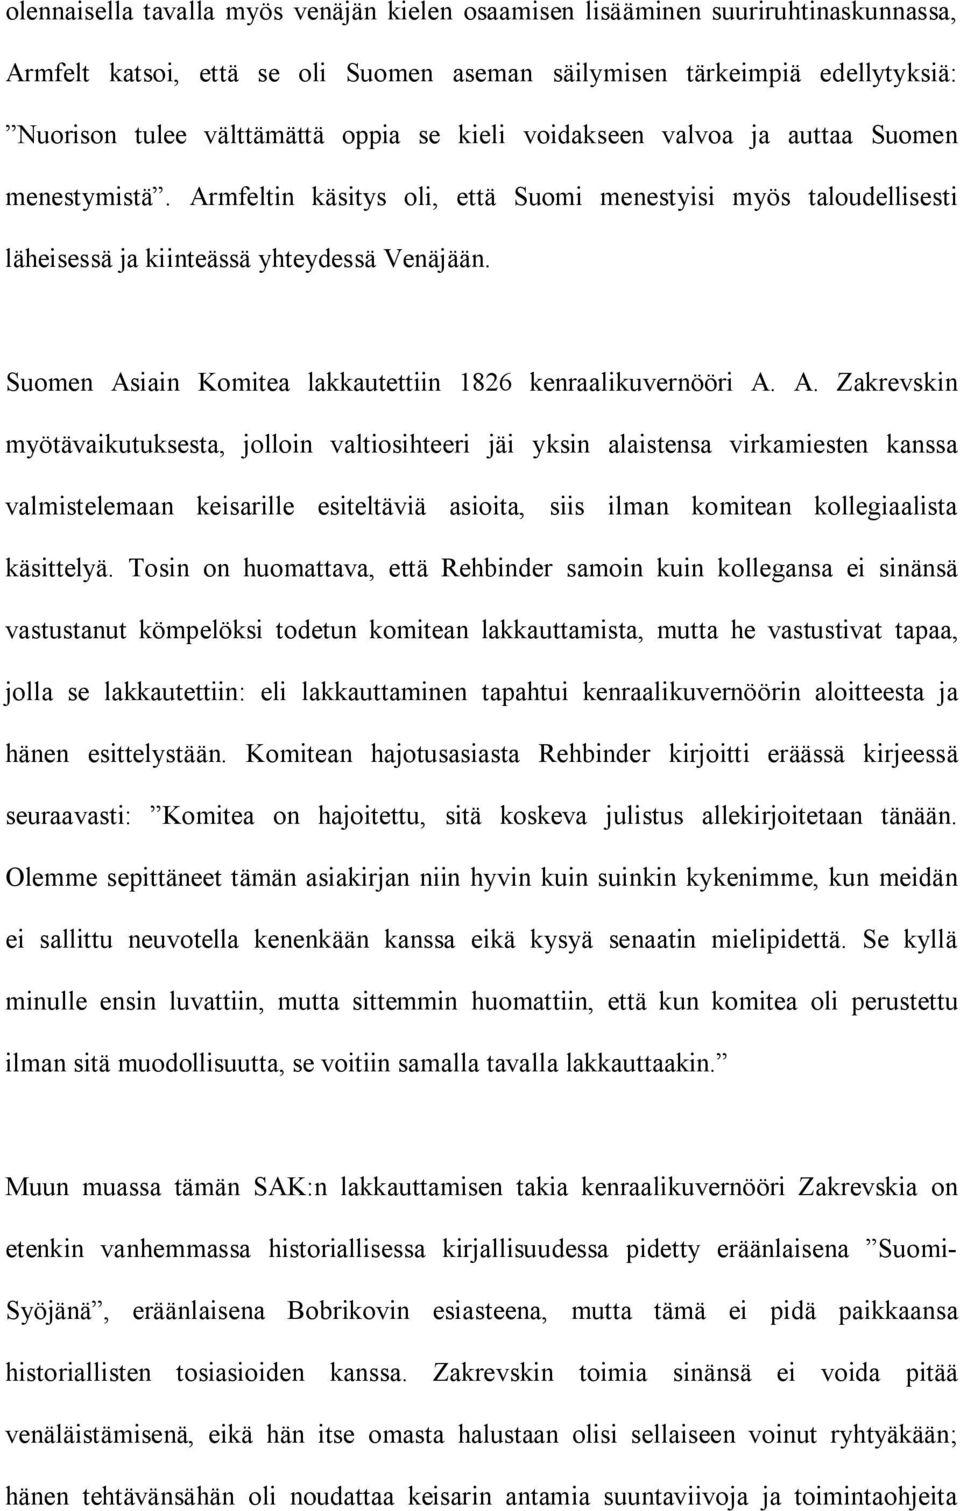 Suomen Asiain Komitea lakkautettiin 1826 kenraalikuvernööri A. A. Zakrevskin myötävaikutuksesta, jolloin valtiosihteeri jäi yksin alaistensa virkamiesten kanssa valmistelemaan keisarille esiteltäviä asioita, siis ilman komitean kollegiaalista käsittelyä.